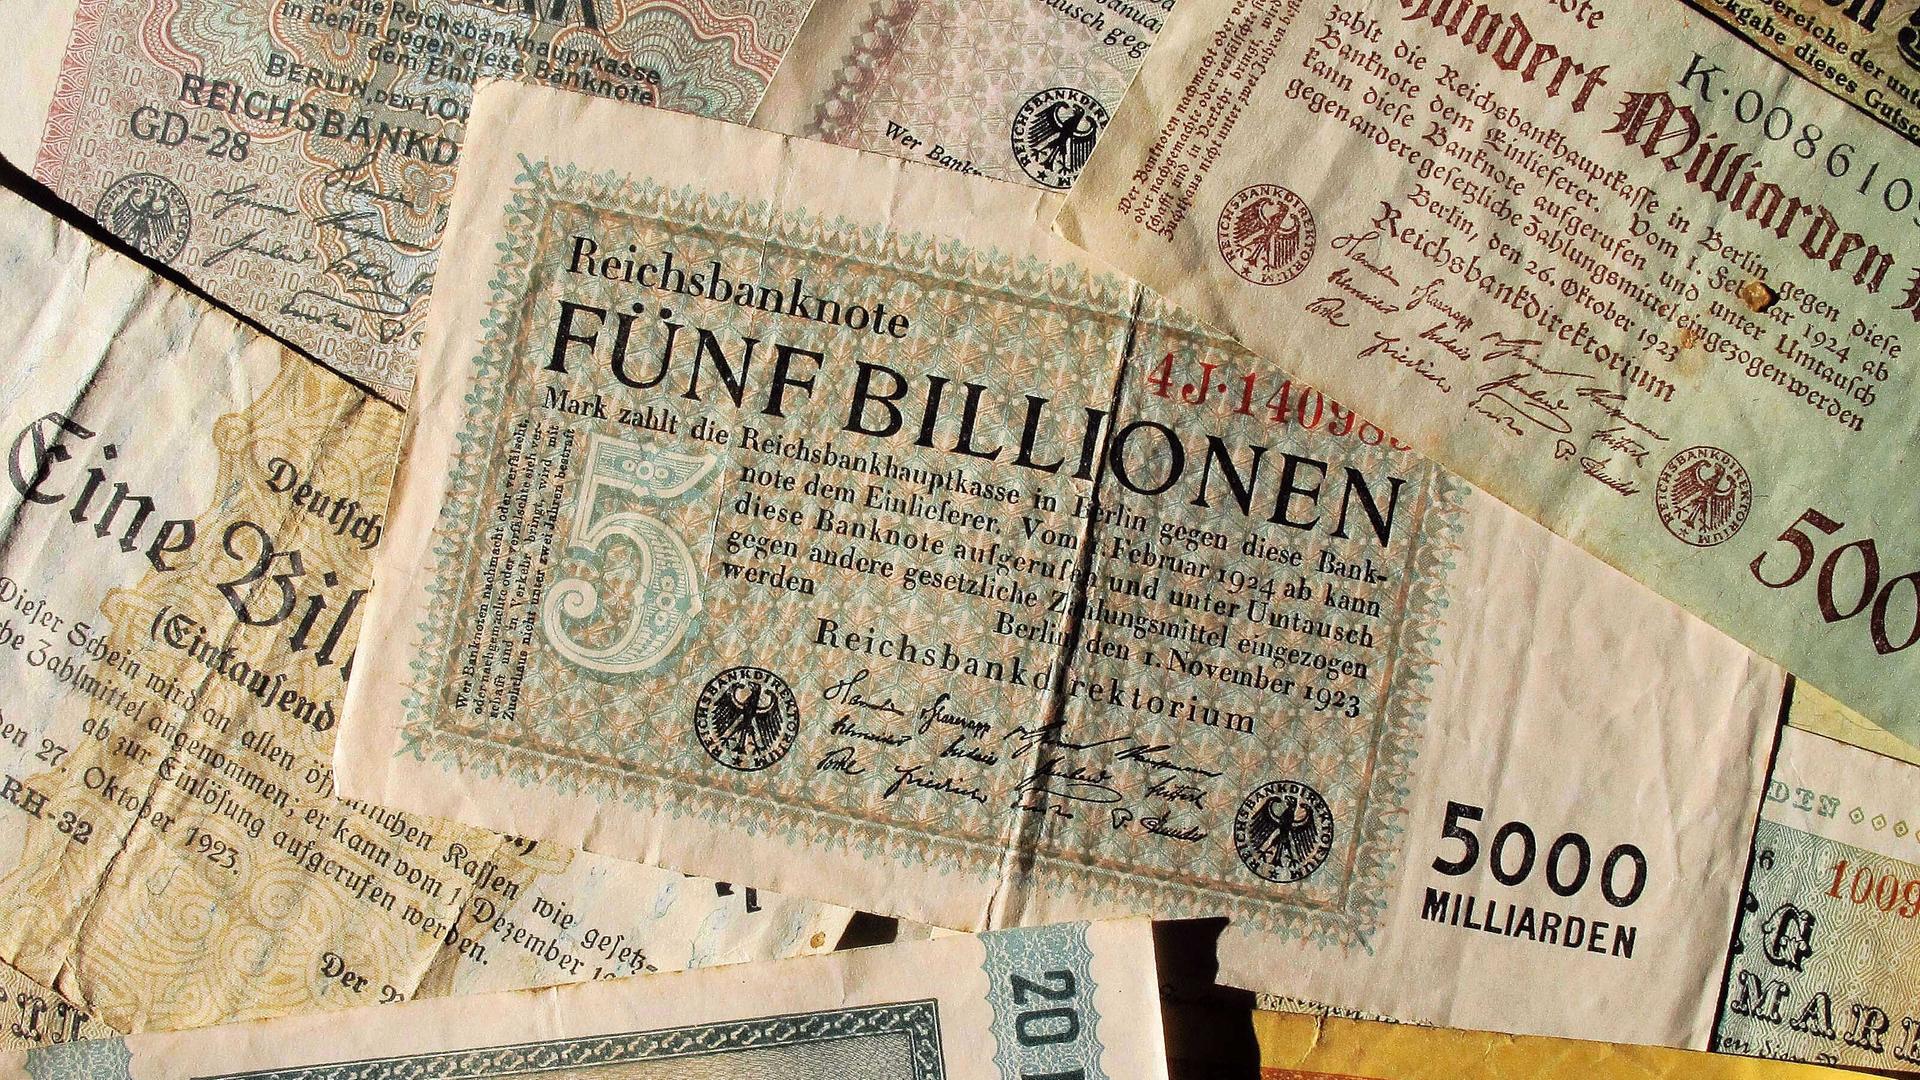 Eine Reichsbanknote über fünf Billionen Mark vom November 1923 und andere Banknoten über 20 Milliarden Mark, 500 Milliarden Mark u.a vornehmlich 1923 von der Deutschen Reichsbank ausgegeben, aufgenommen am 22.10.2011. 